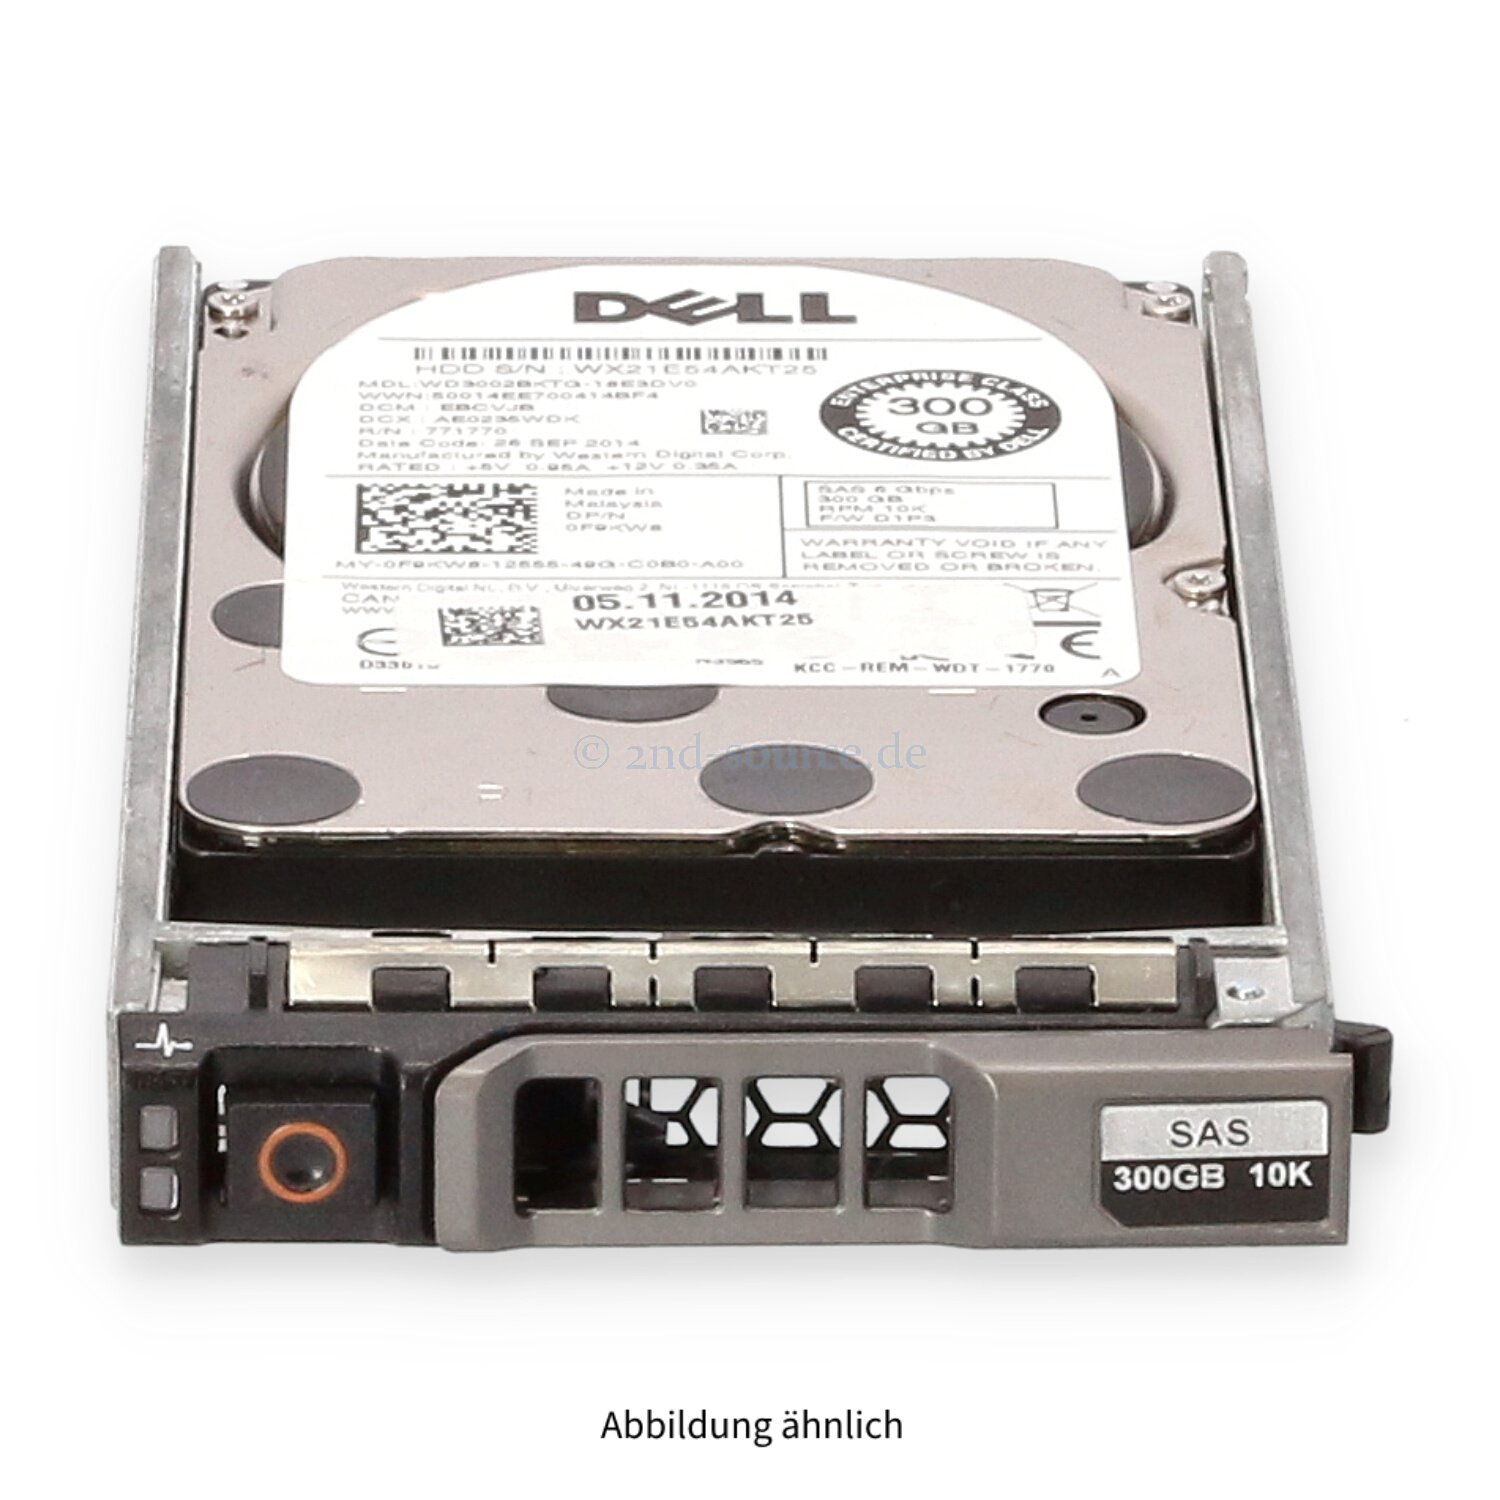 Dell 300GB 10k SAS 6G SFF HotPlug HDD F9KW8 0F9KW8